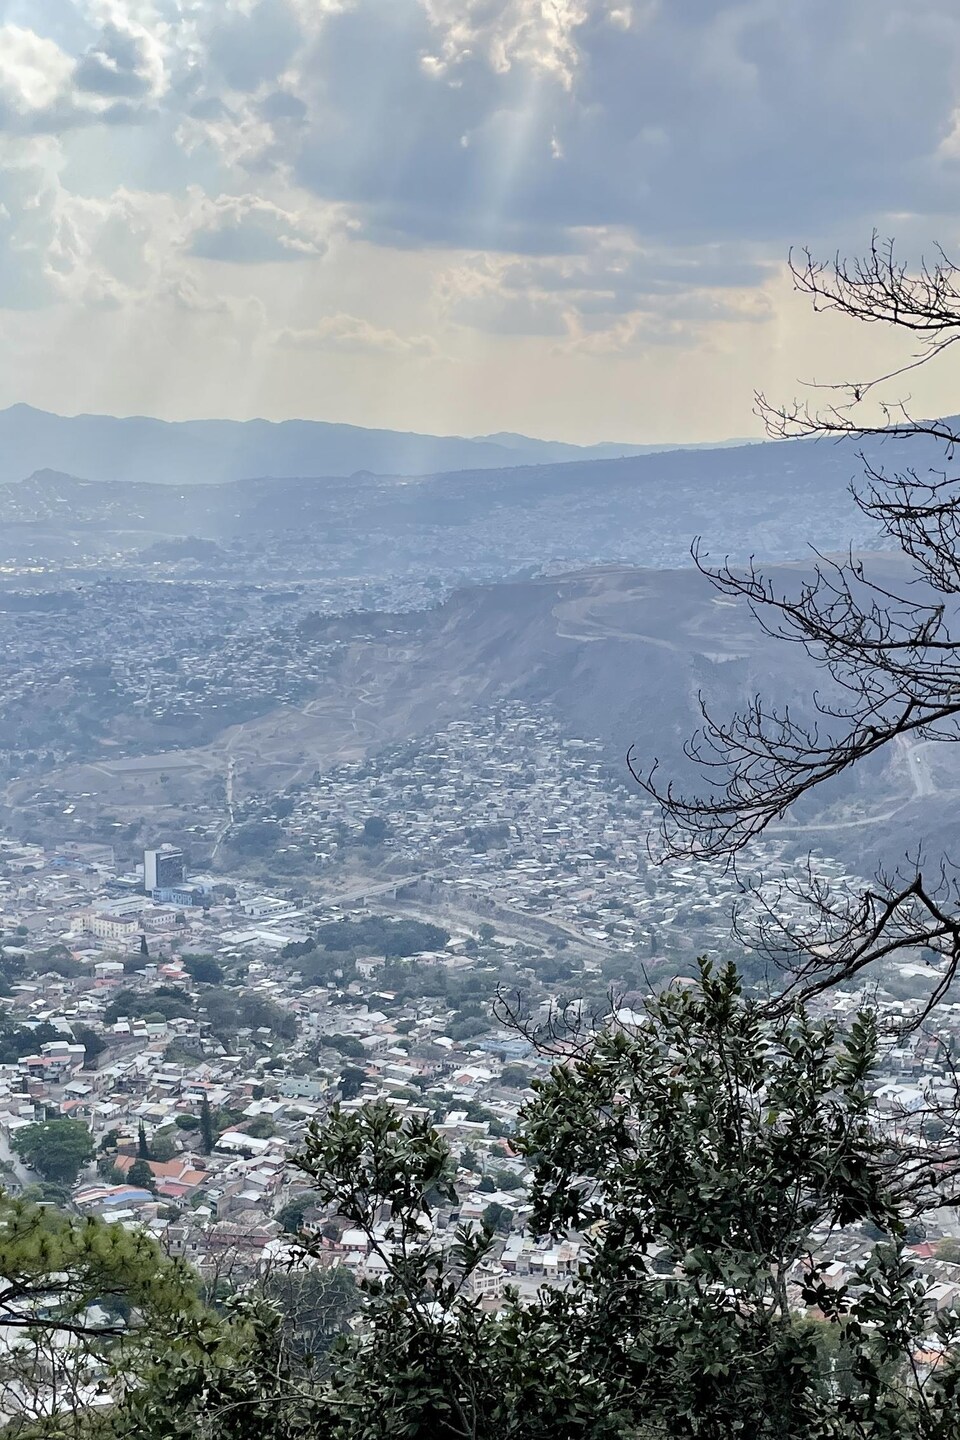 La ville de Tegucigalpa, capitale du Honduras, est nichée dans les montagnes.